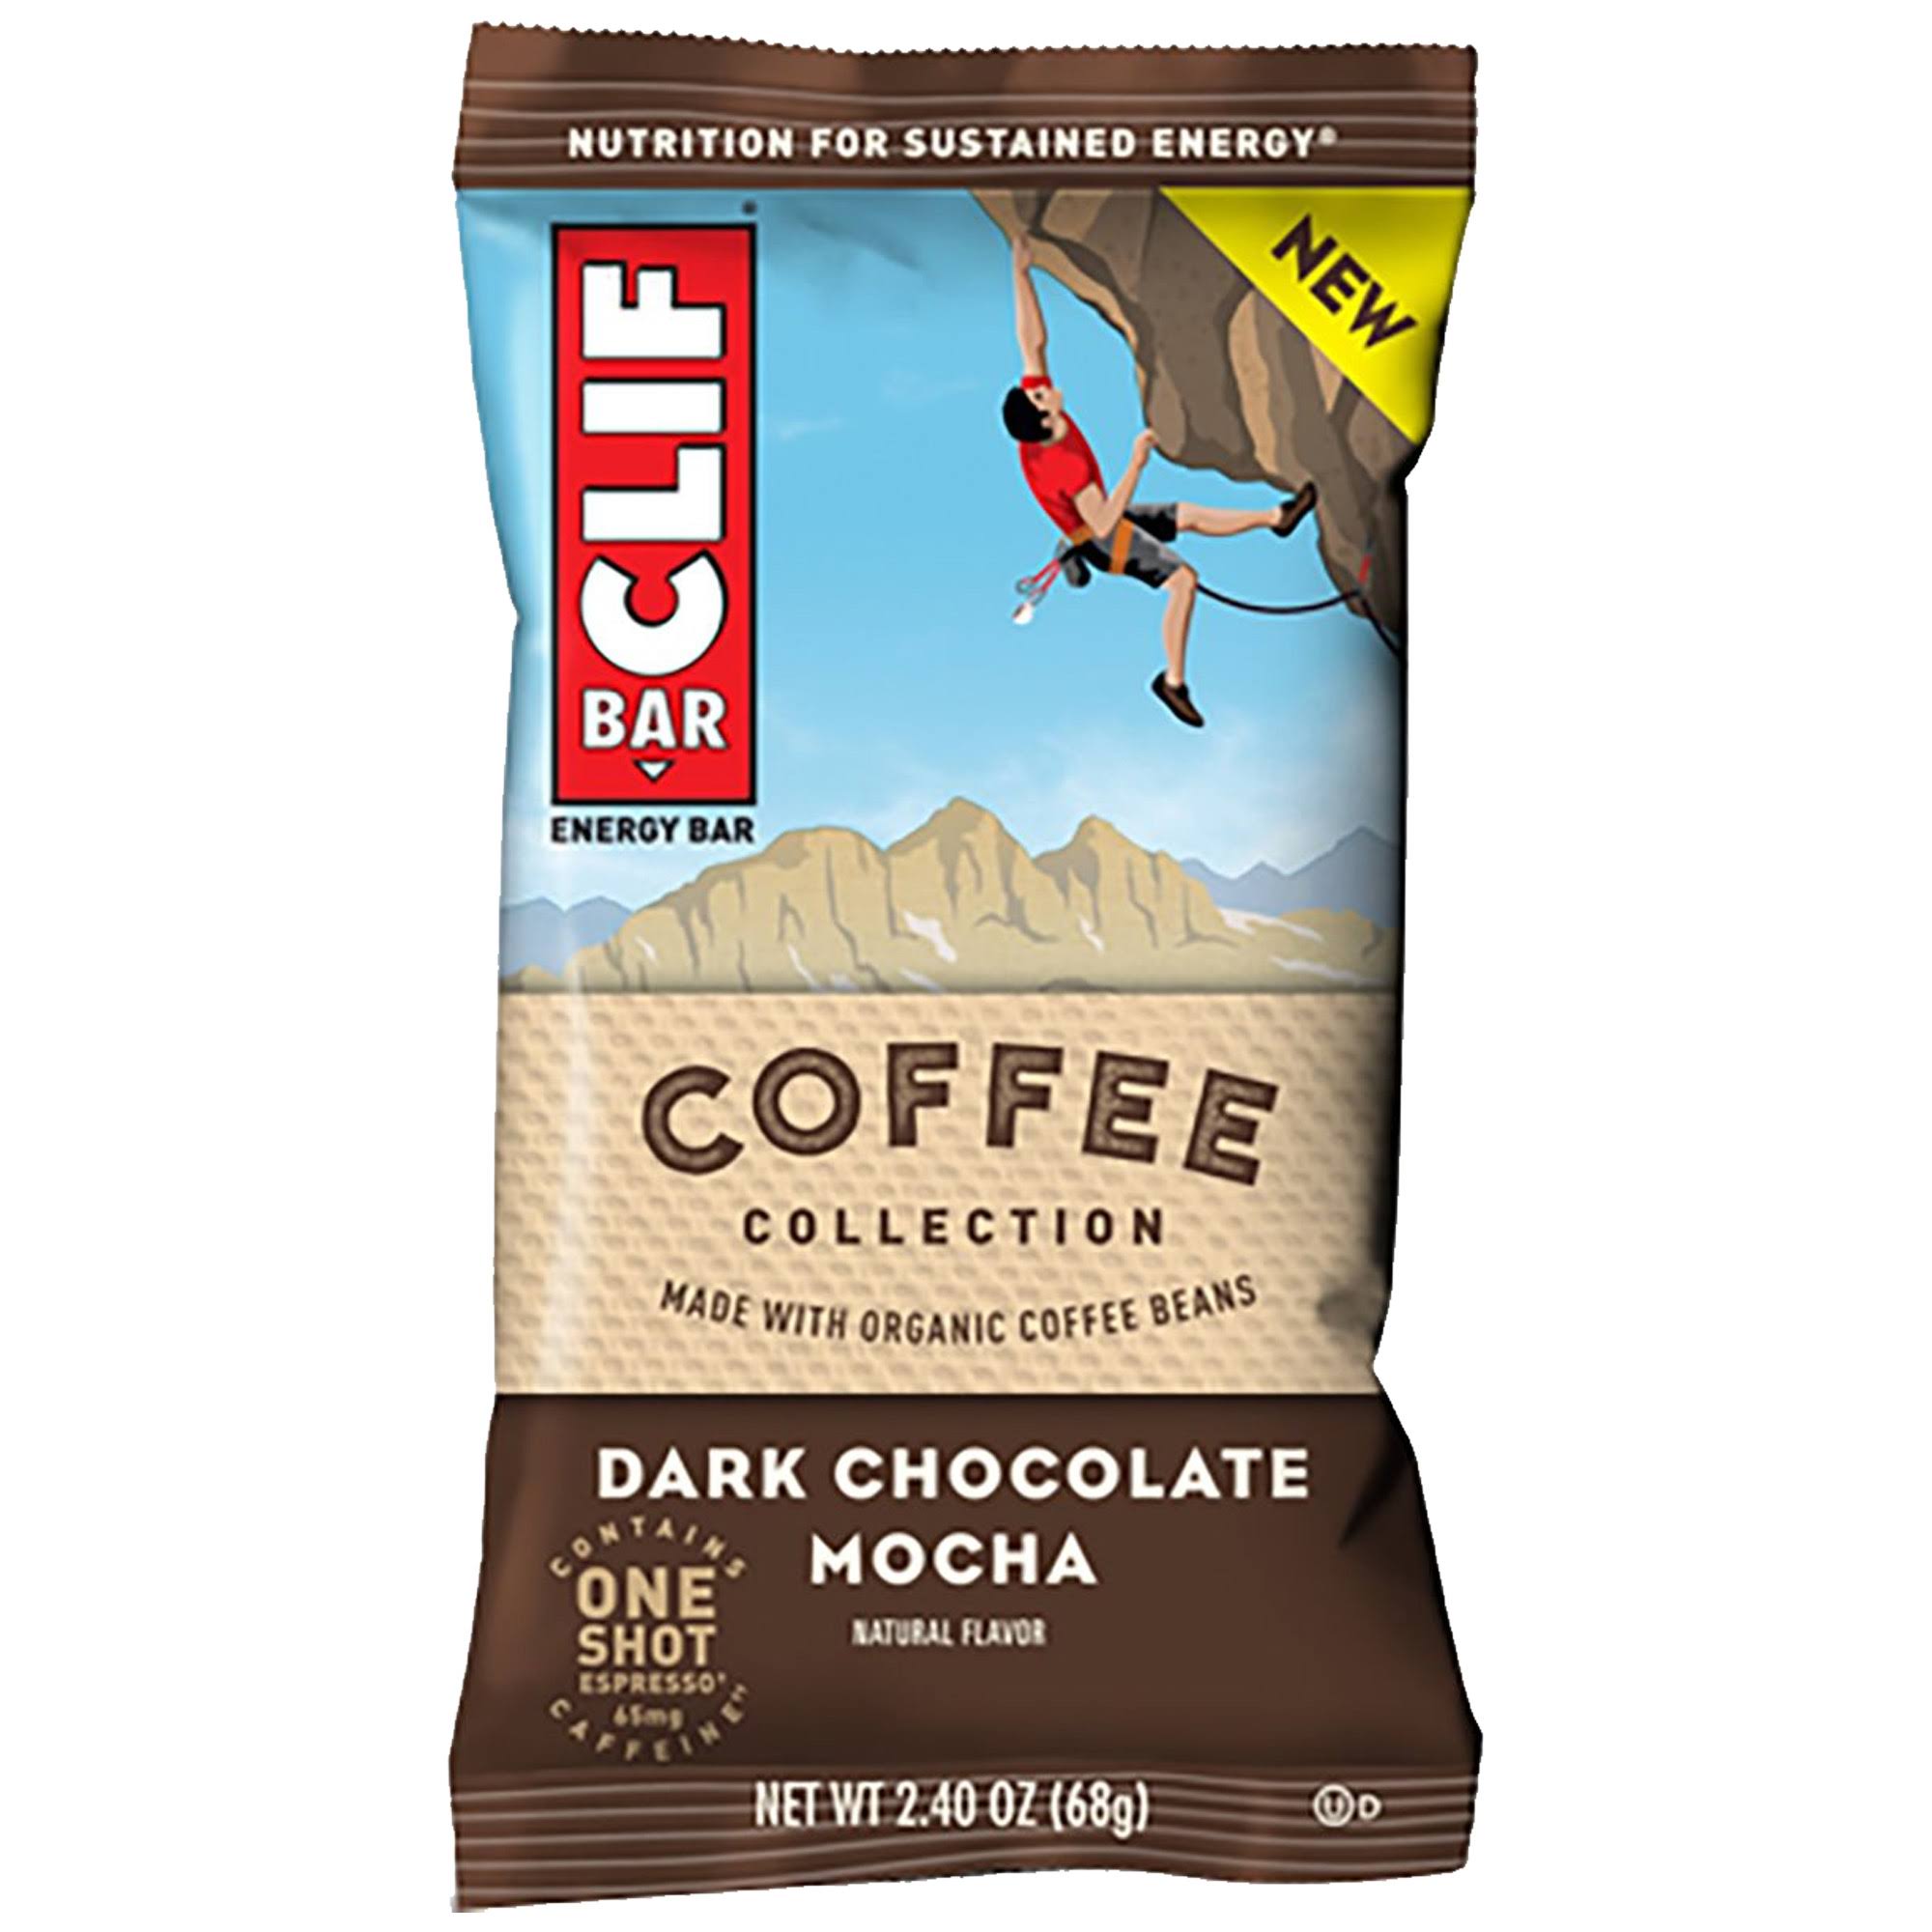 Clif Bar Energy Bar - Dark Chocolate Mocha, 2.40oz